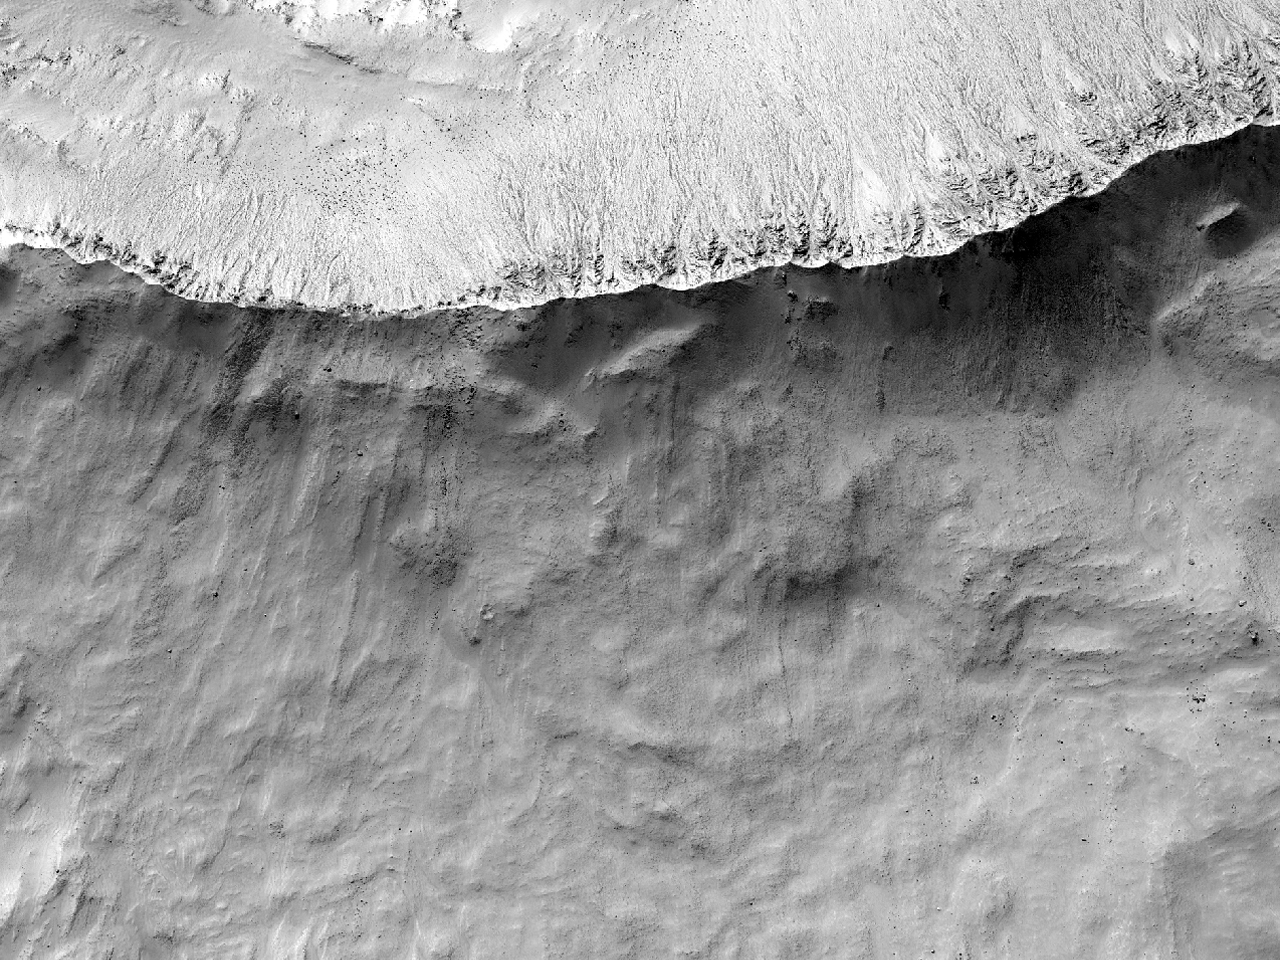 7 kilometrelik çapa sahip yeni oluşmuş bir çarpma kraterinin kenar çıkıntısı ve püskürüğü